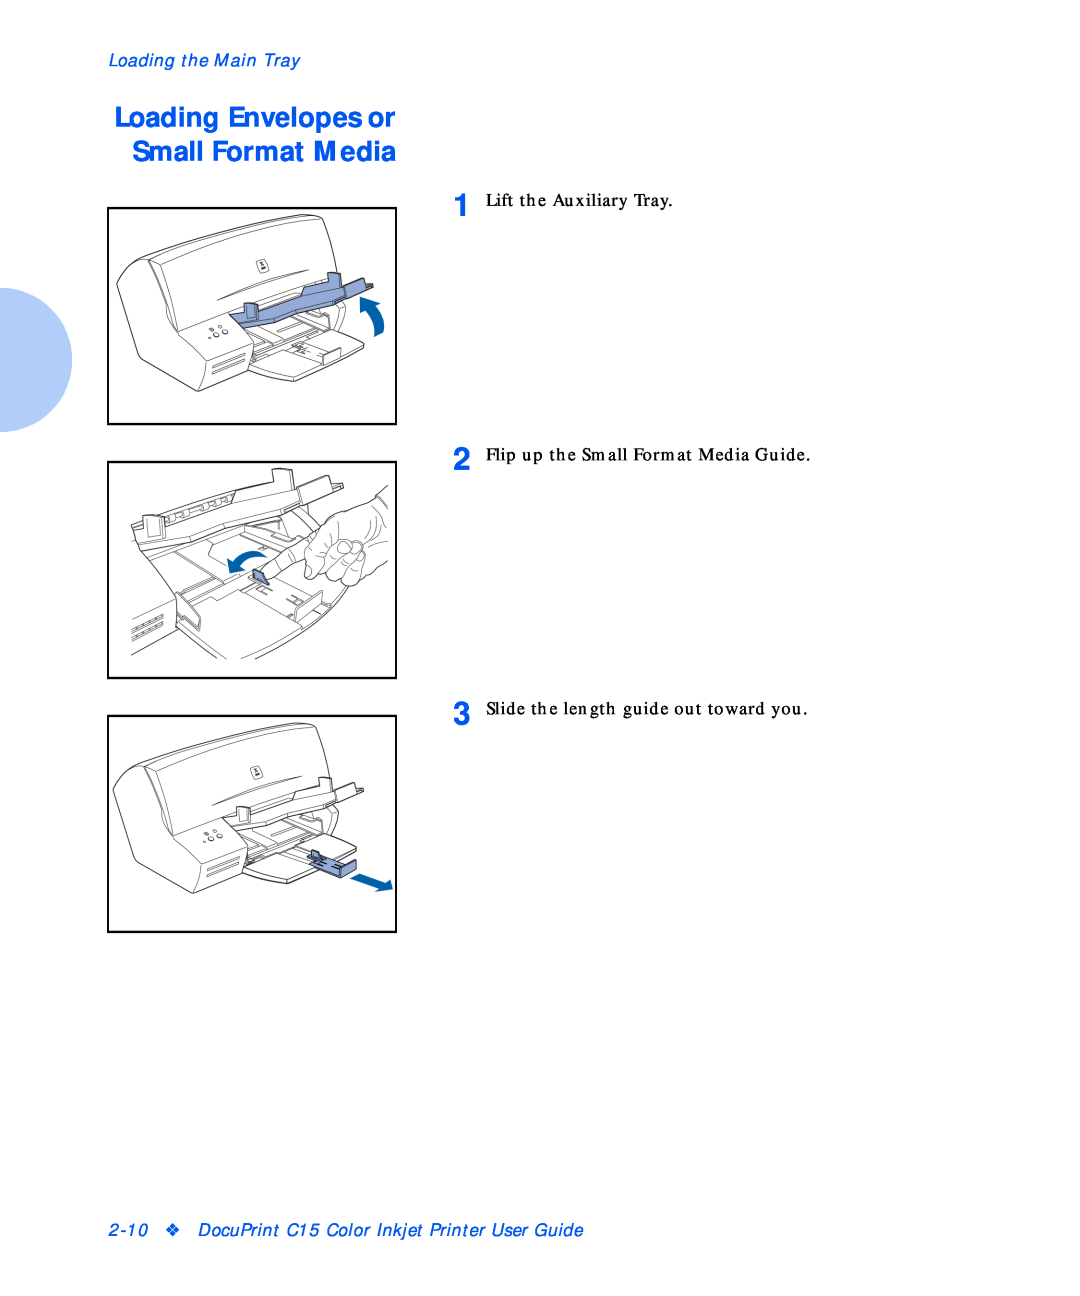 Xerox C15 manual Loading Envelopes or Small Format Media, Loading the Main Tray, Lift the Auxiliary Tray 